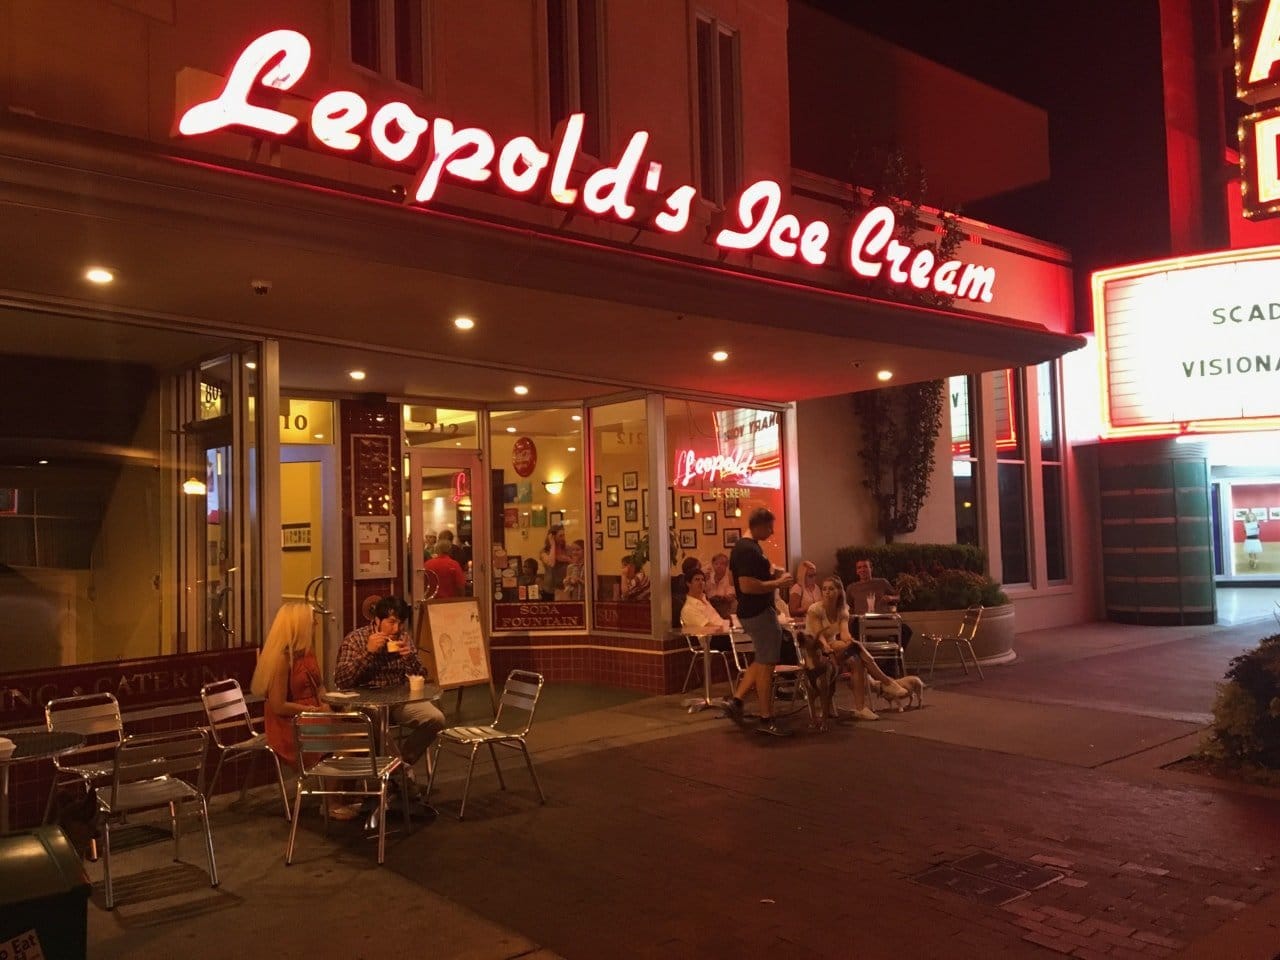 Leopold's Ice Cream